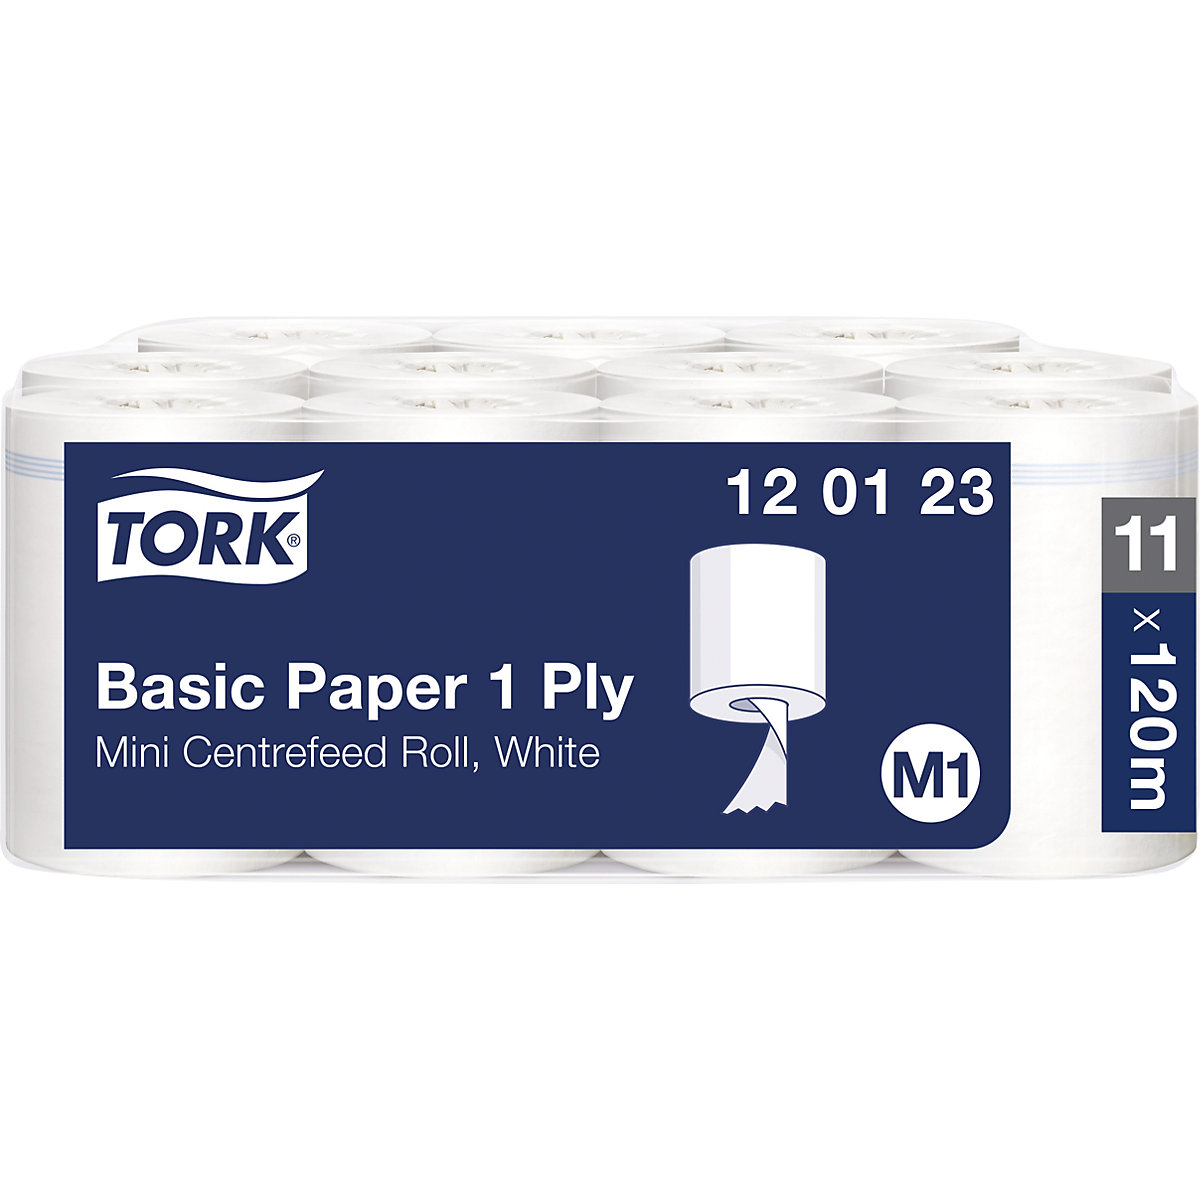 Standardowe ściereczki papierowe, centralne dozowanie – TORK (Zdjęcie produktu 8)-7